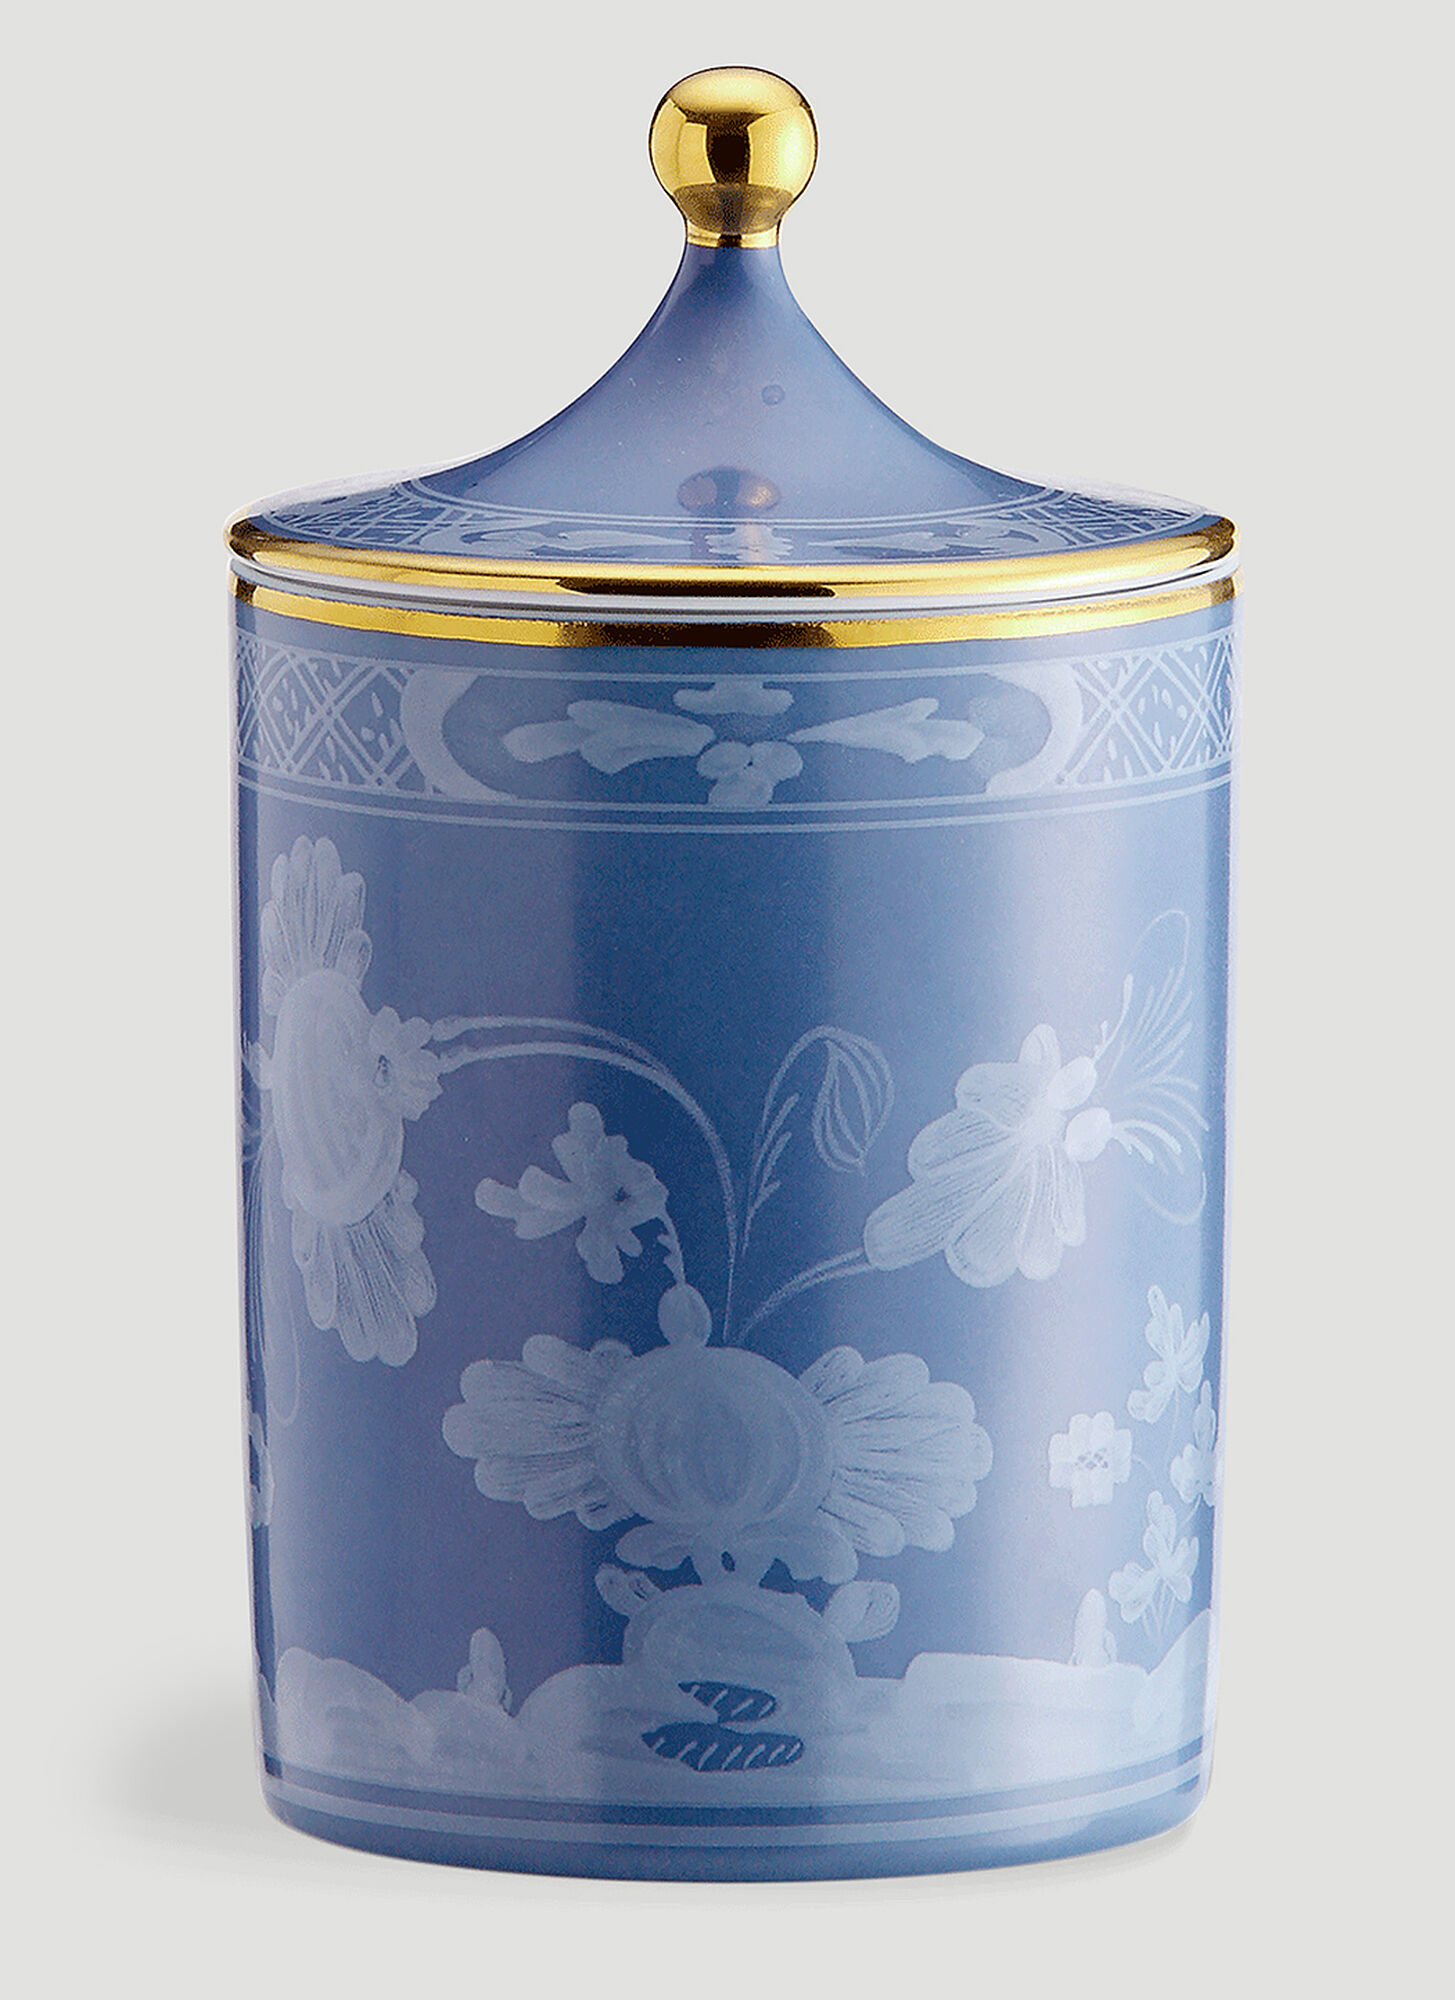 Ginori 1735 Oriente Italiano Candle In Blue